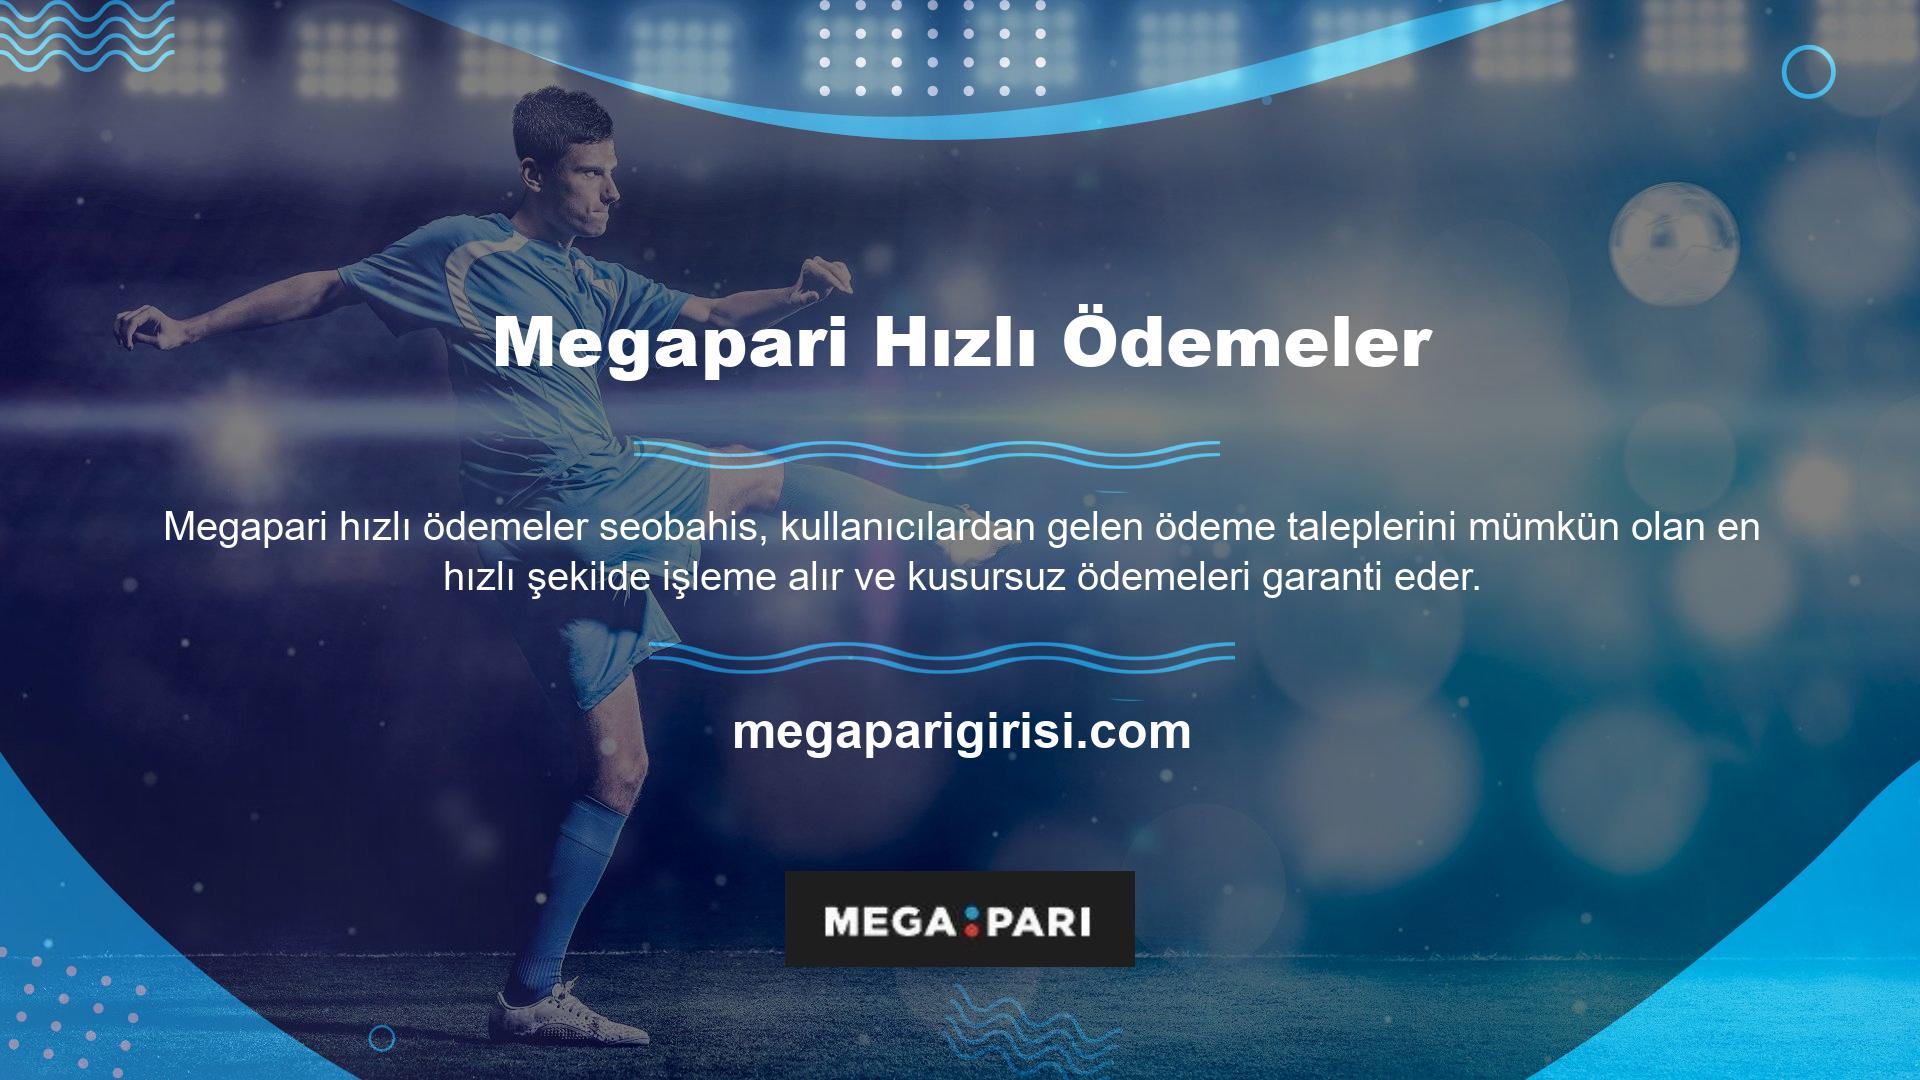 Megapari web sitesinde kullanıcılara ödeme yaparken hiçbir sorun yaşanmadı